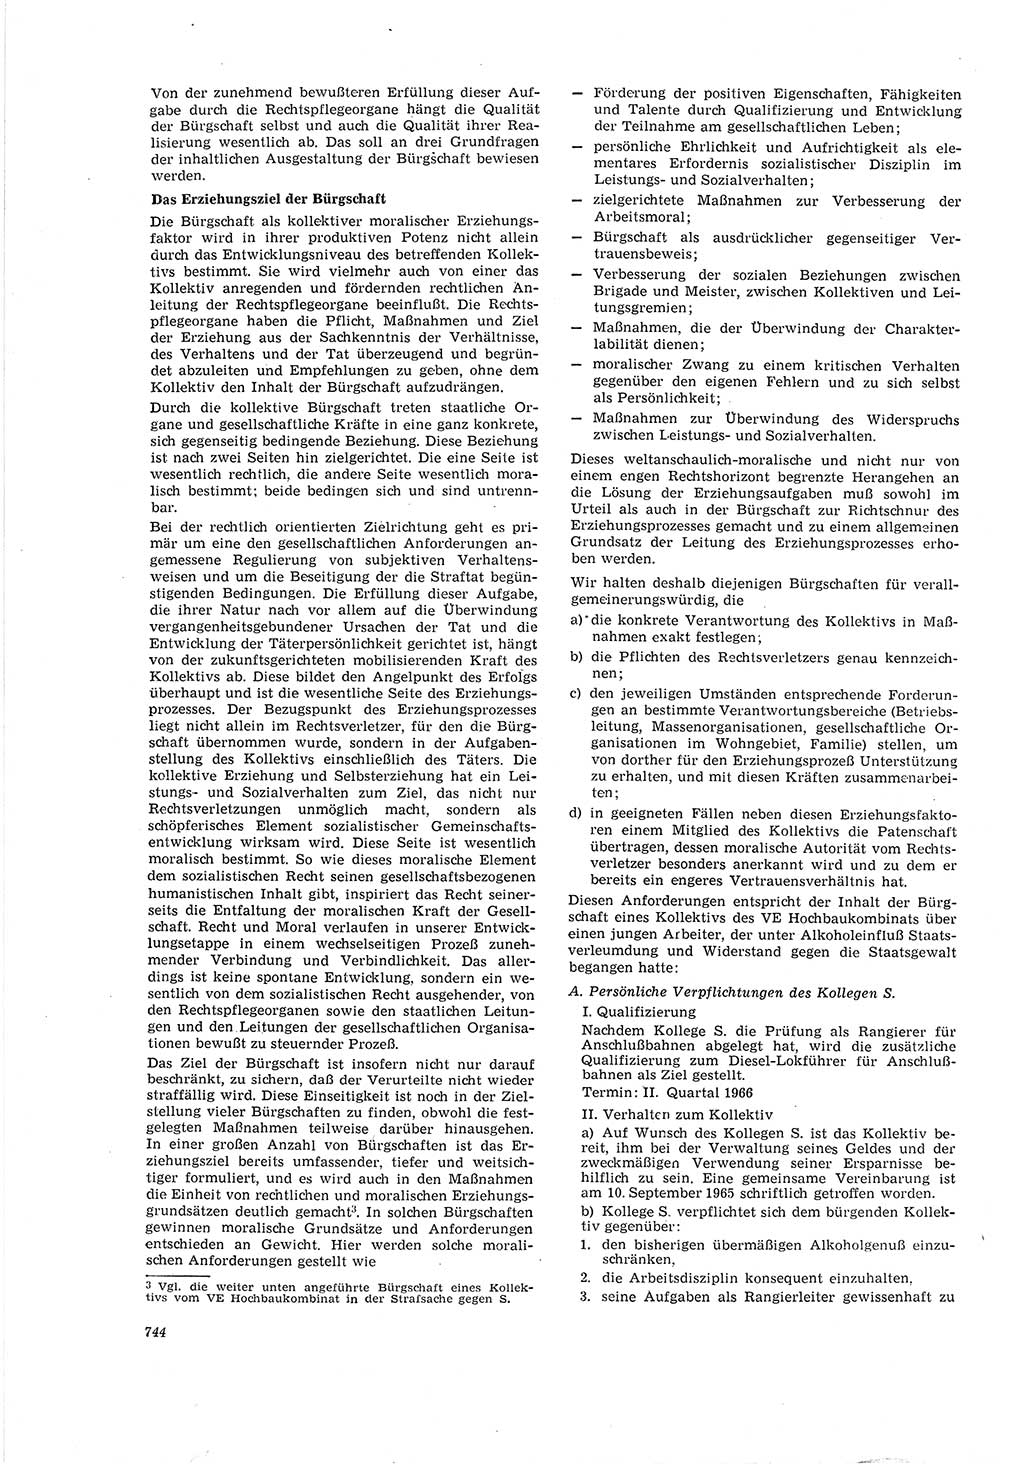 Neue Justiz (NJ), Zeitschrift für Recht und Rechtswissenschaft [Deutsche Demokratische Republik (DDR)], 20. Jahrgang 1966, Seite 744 (NJ DDR 1966, S. 744)